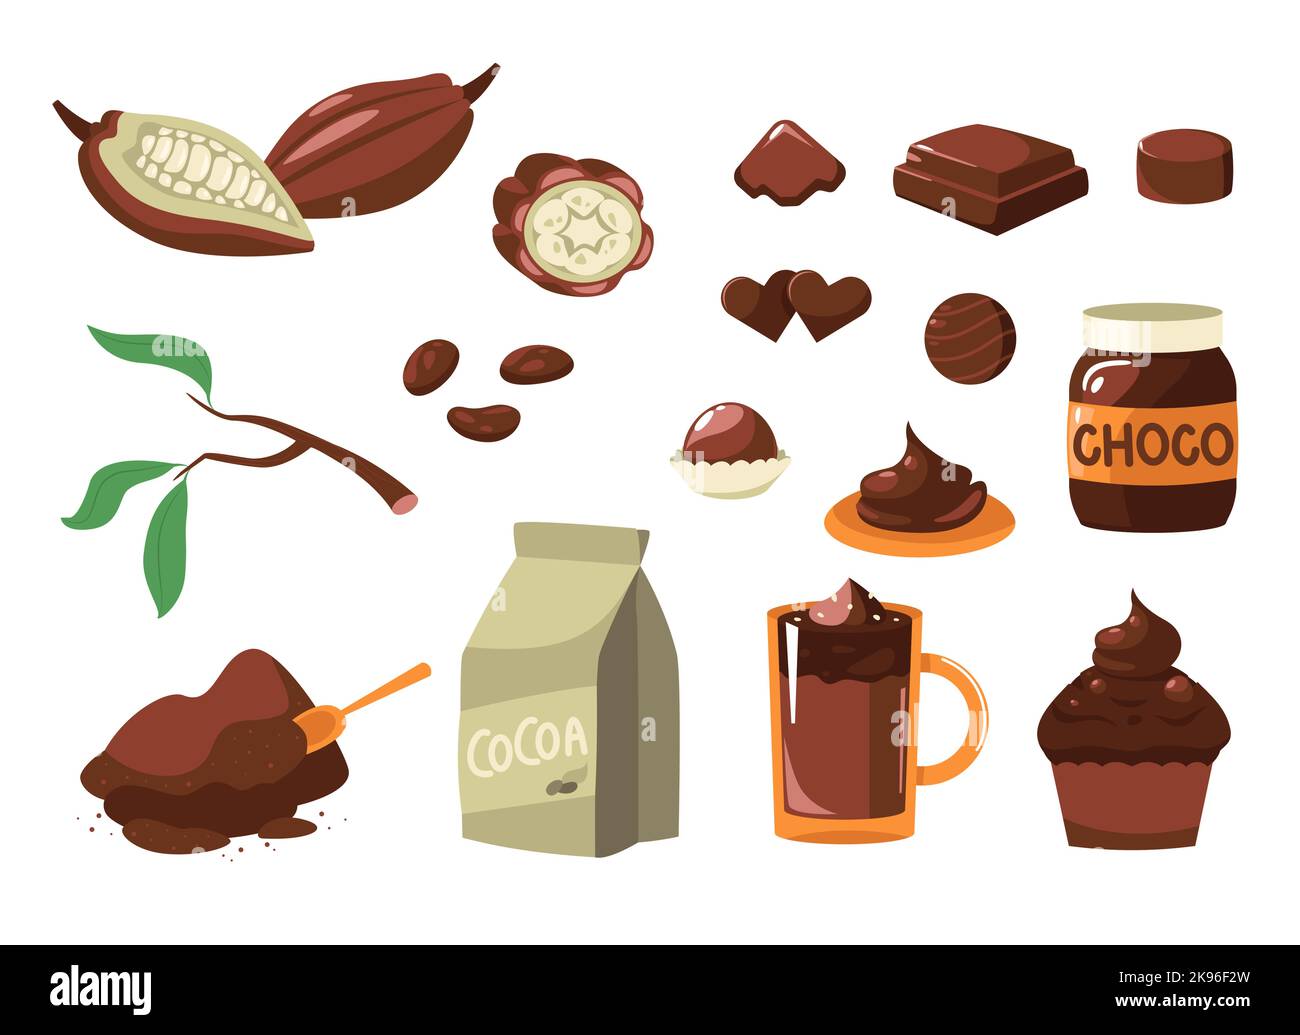 Cartoon-Kakao. Braune Bohnen für Kakao Milch dunkle Schokolade Getränk Süßigkeiten, süßes Produkt für Dessert Getränke Kosmetik. Vektor-isolierter Satz Stock Vektor